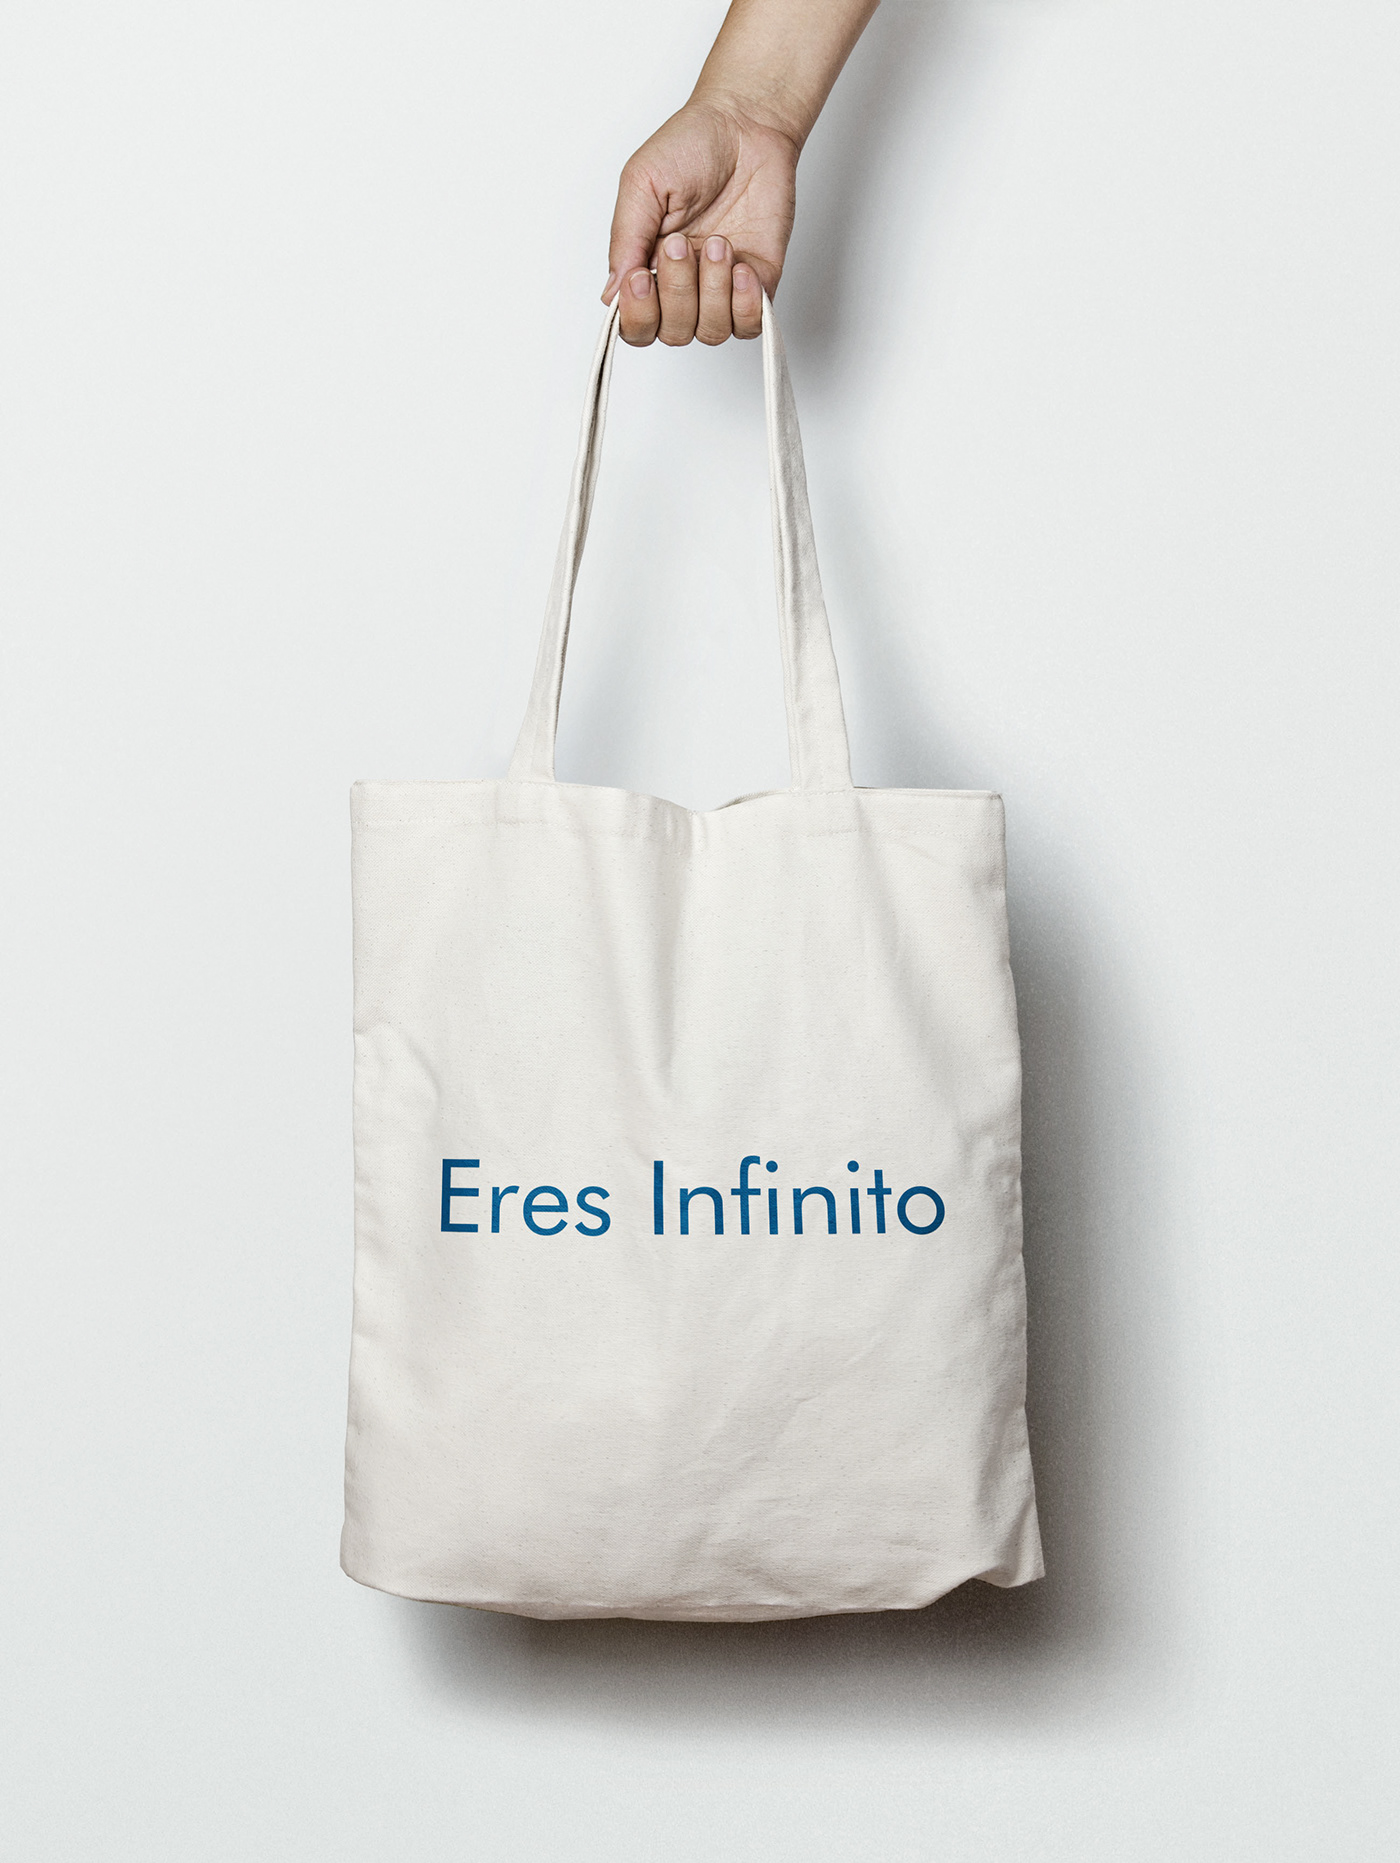 bags Bolsas branding  camisetas cartelería diseño Packaging premio tshirts